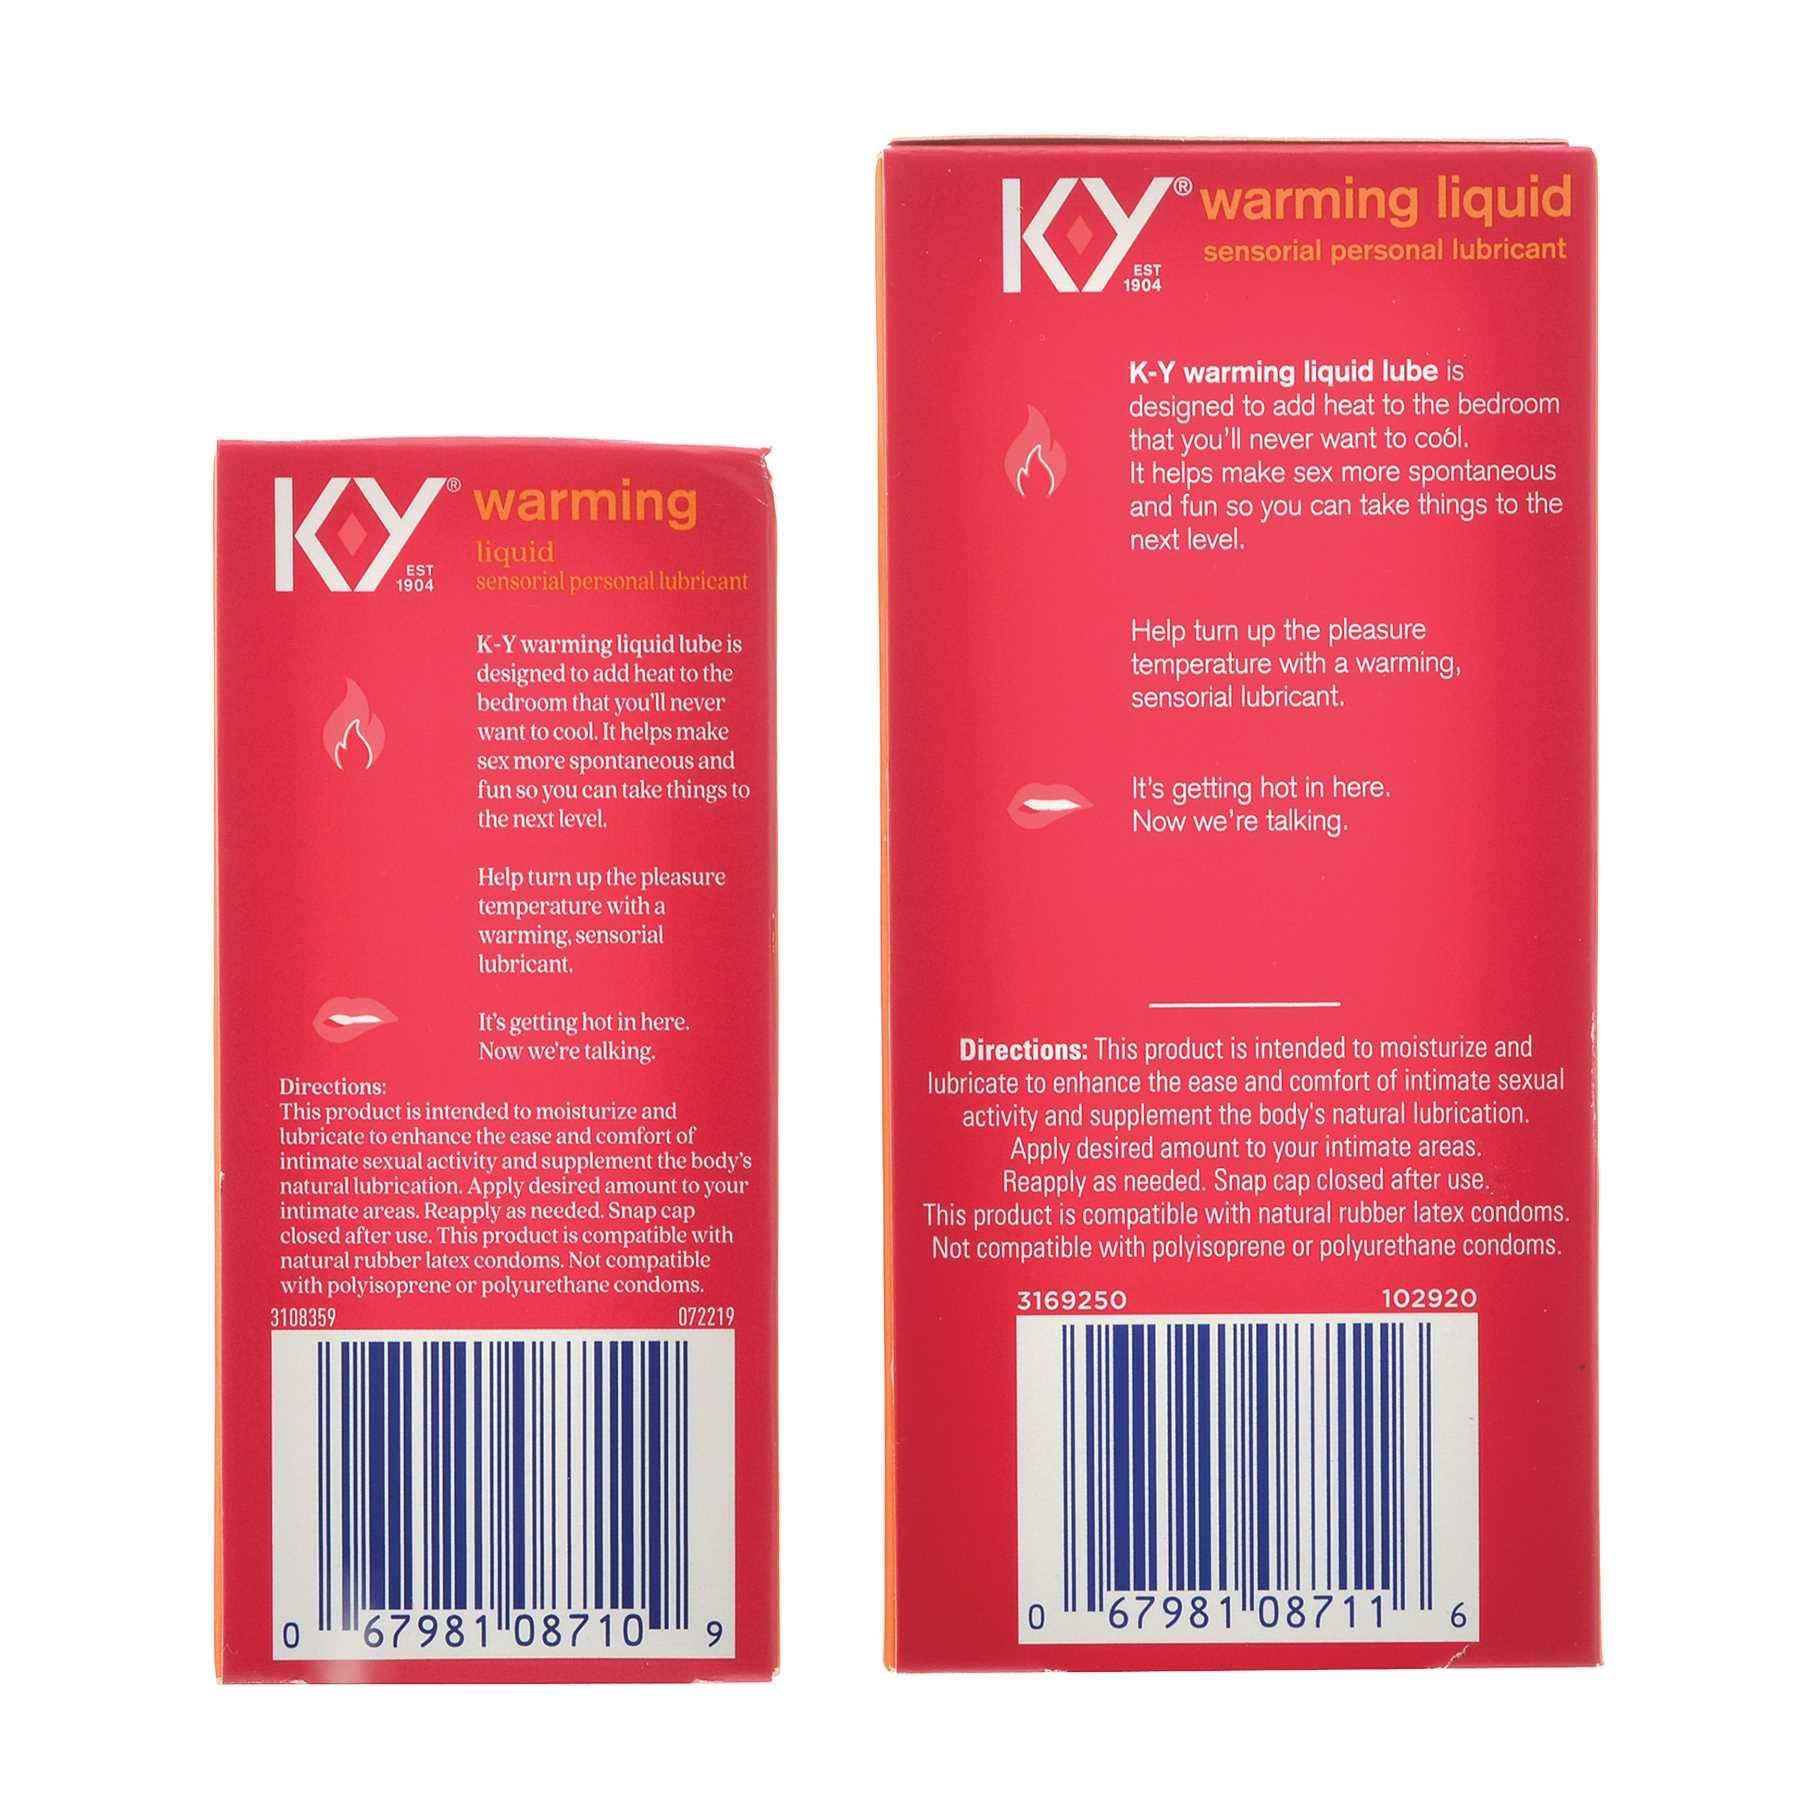 K-Y Warming Liquid back of package